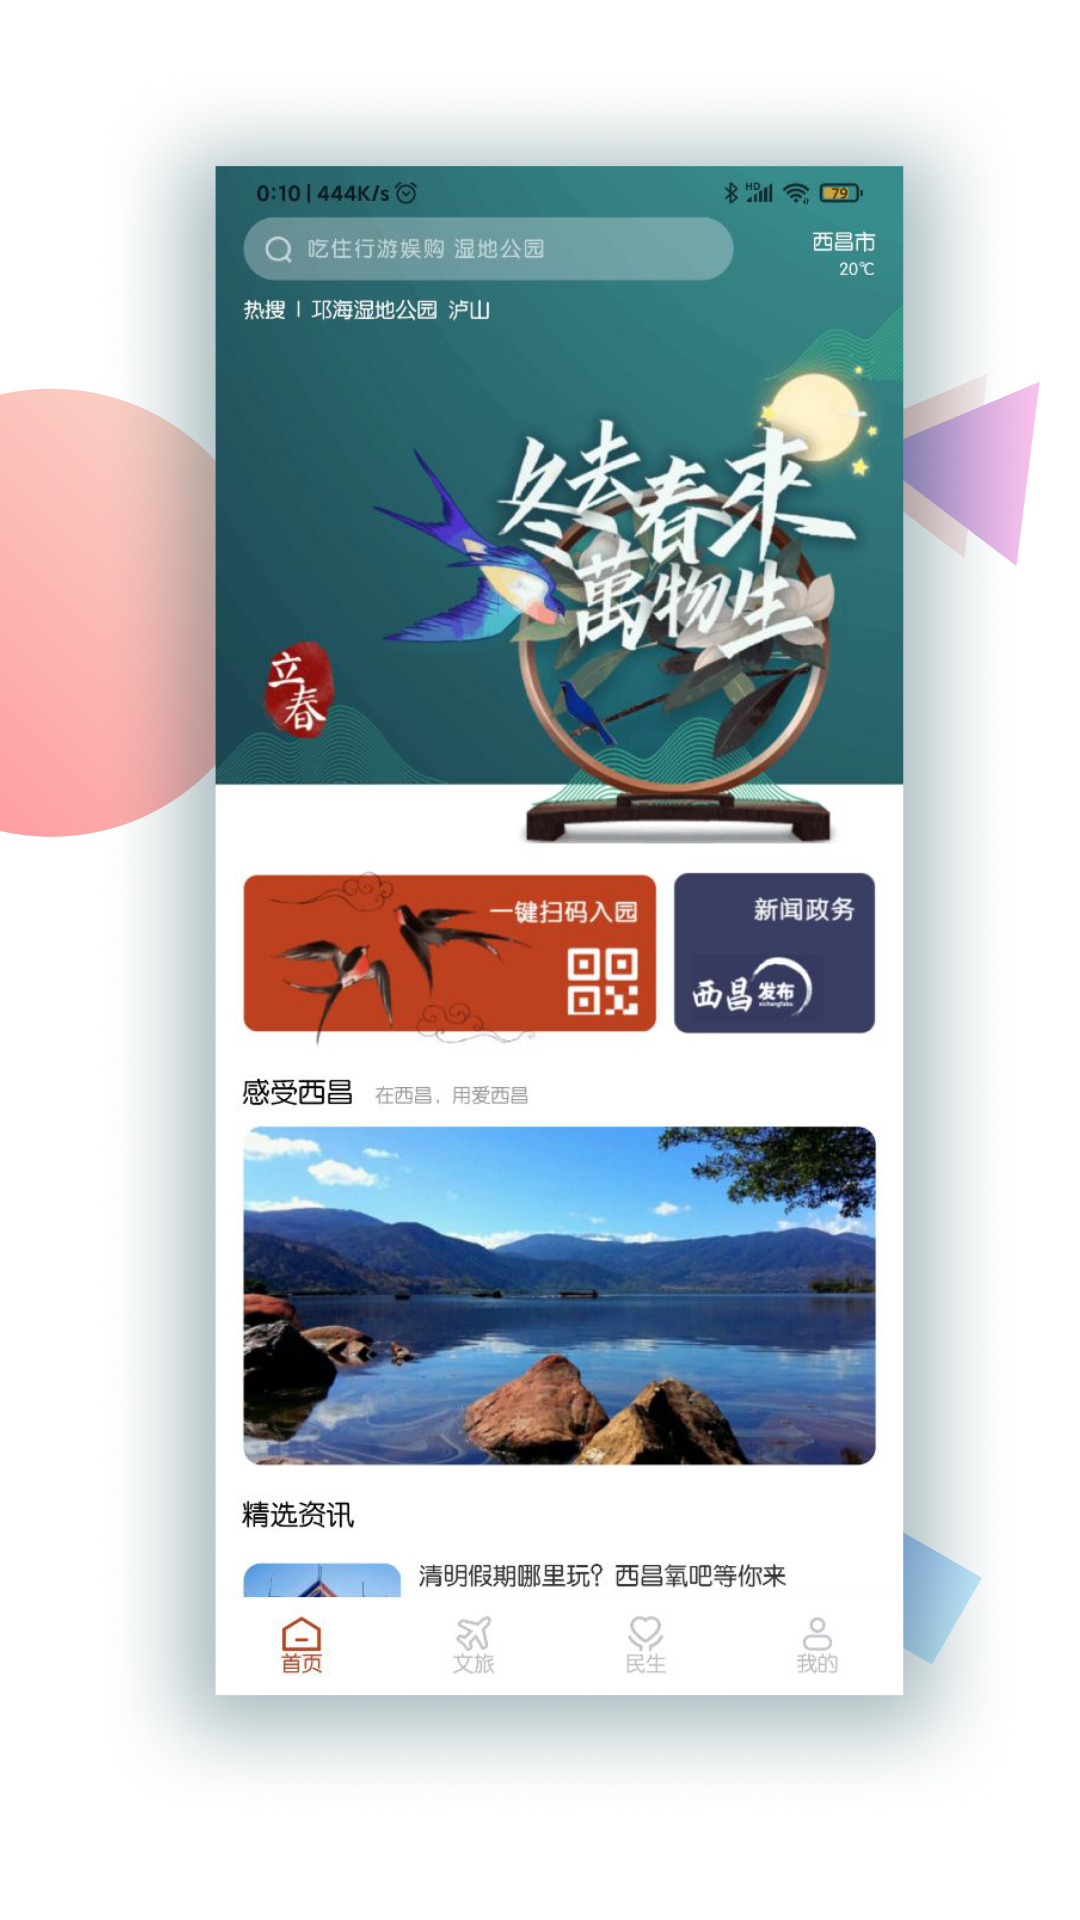 爱西昌app旅游服务平台1.4.5正式版截图1